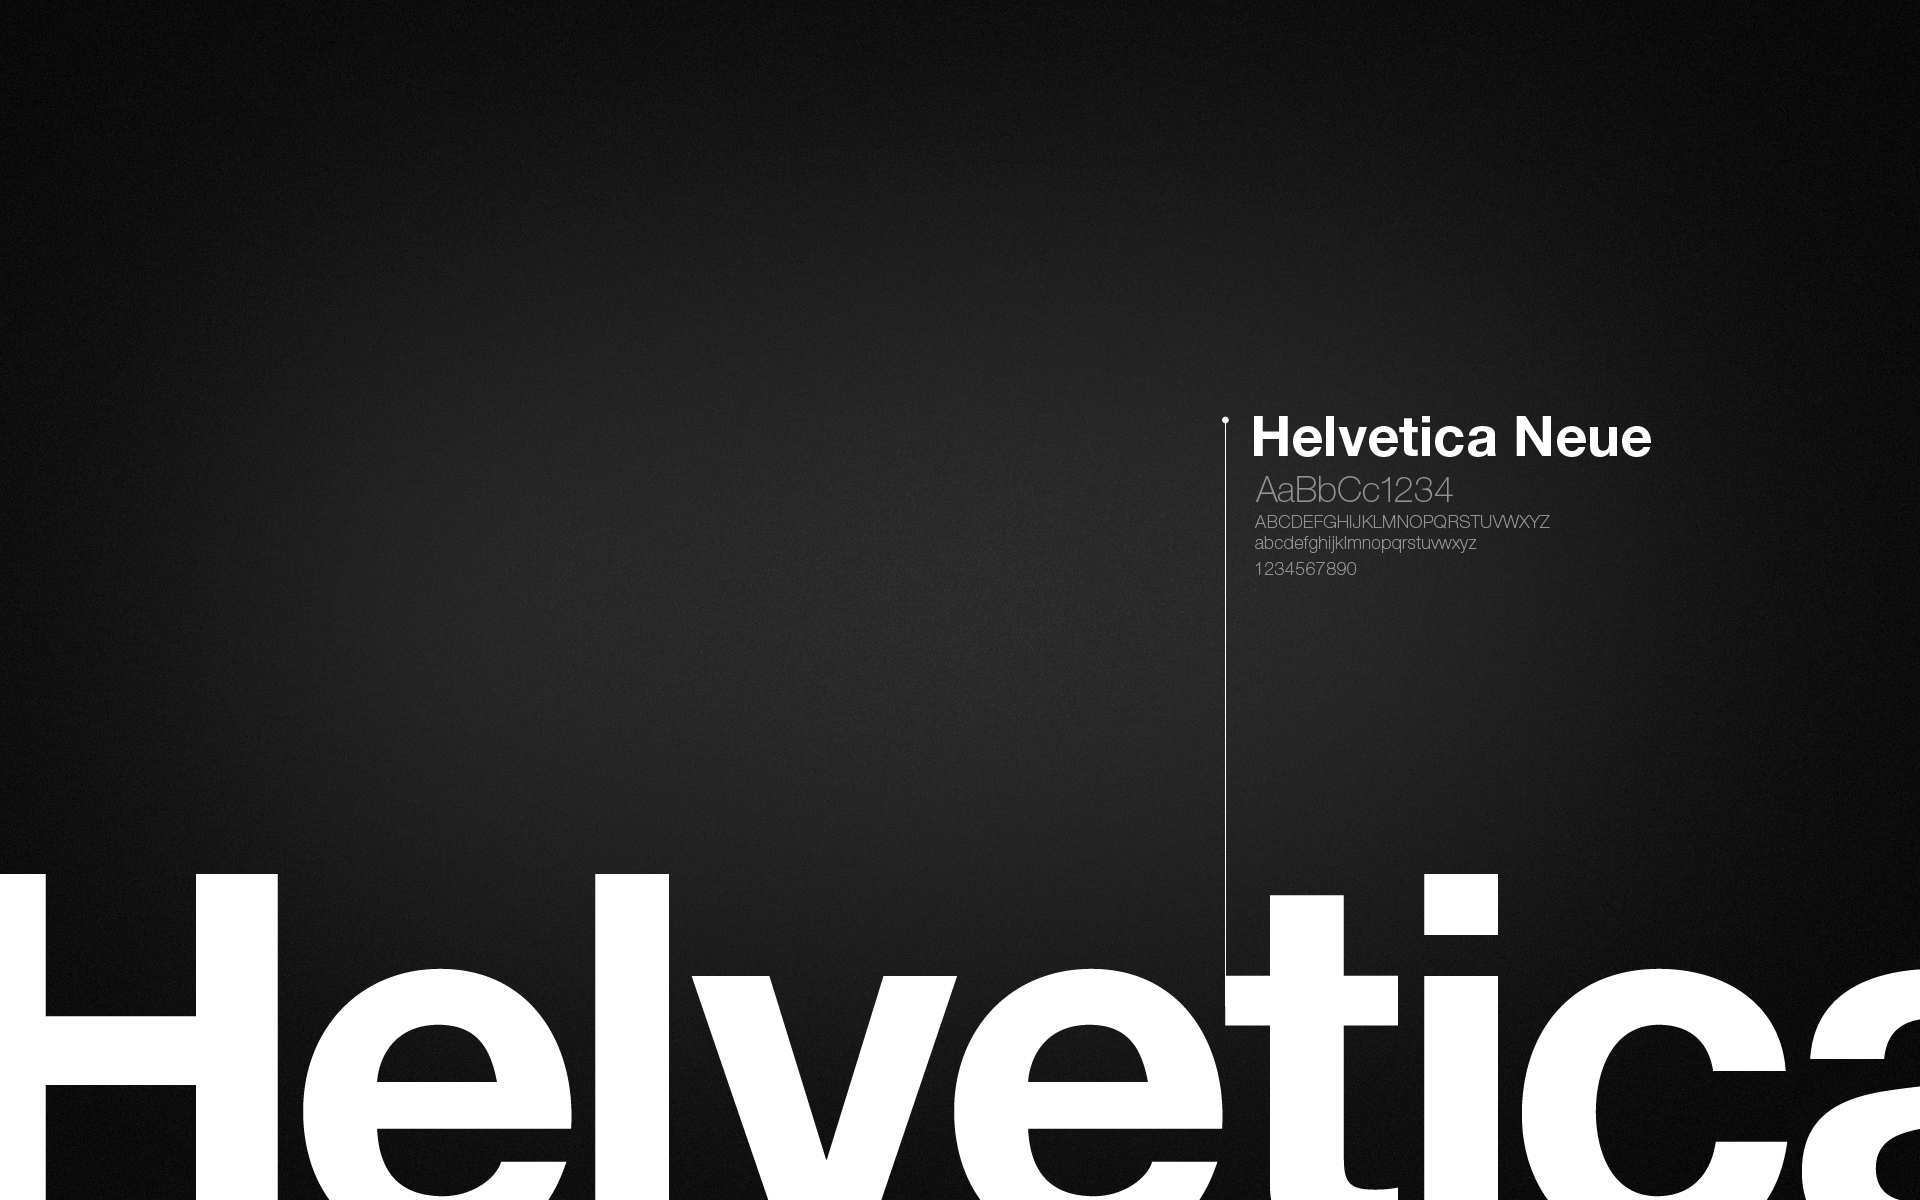 Helvetica Neue, Typography, Digital art Wallpaper